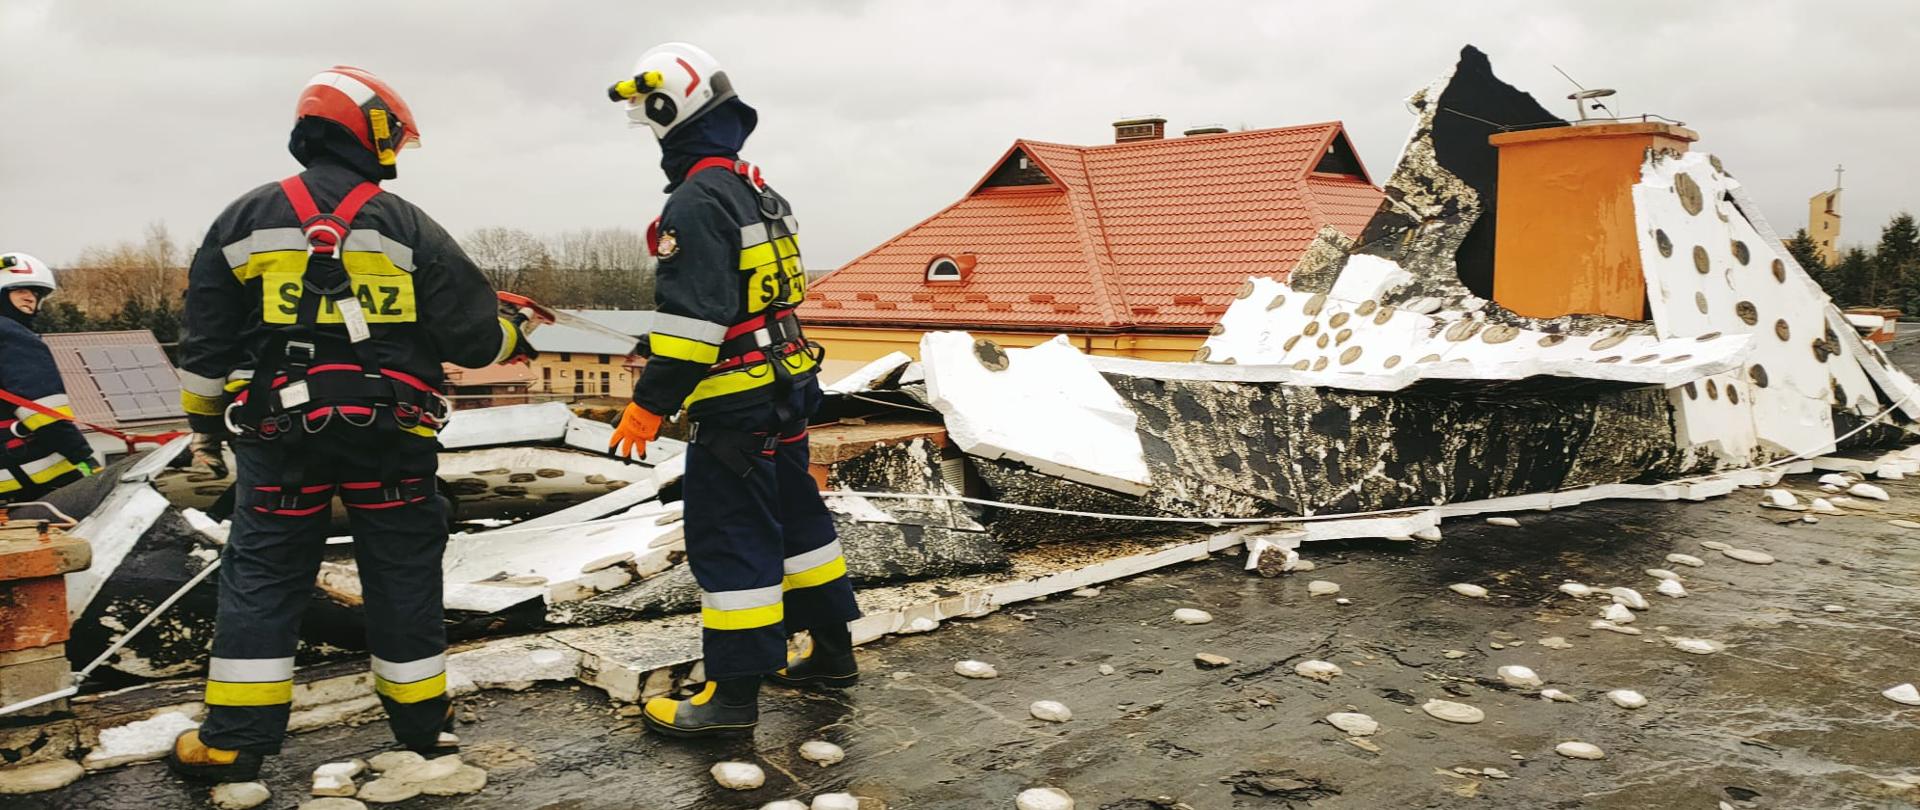 Na zdjęciu widzimy strażaków na stropodachu budynku szkoły zabezpieczających zerwane poszycie dachu.